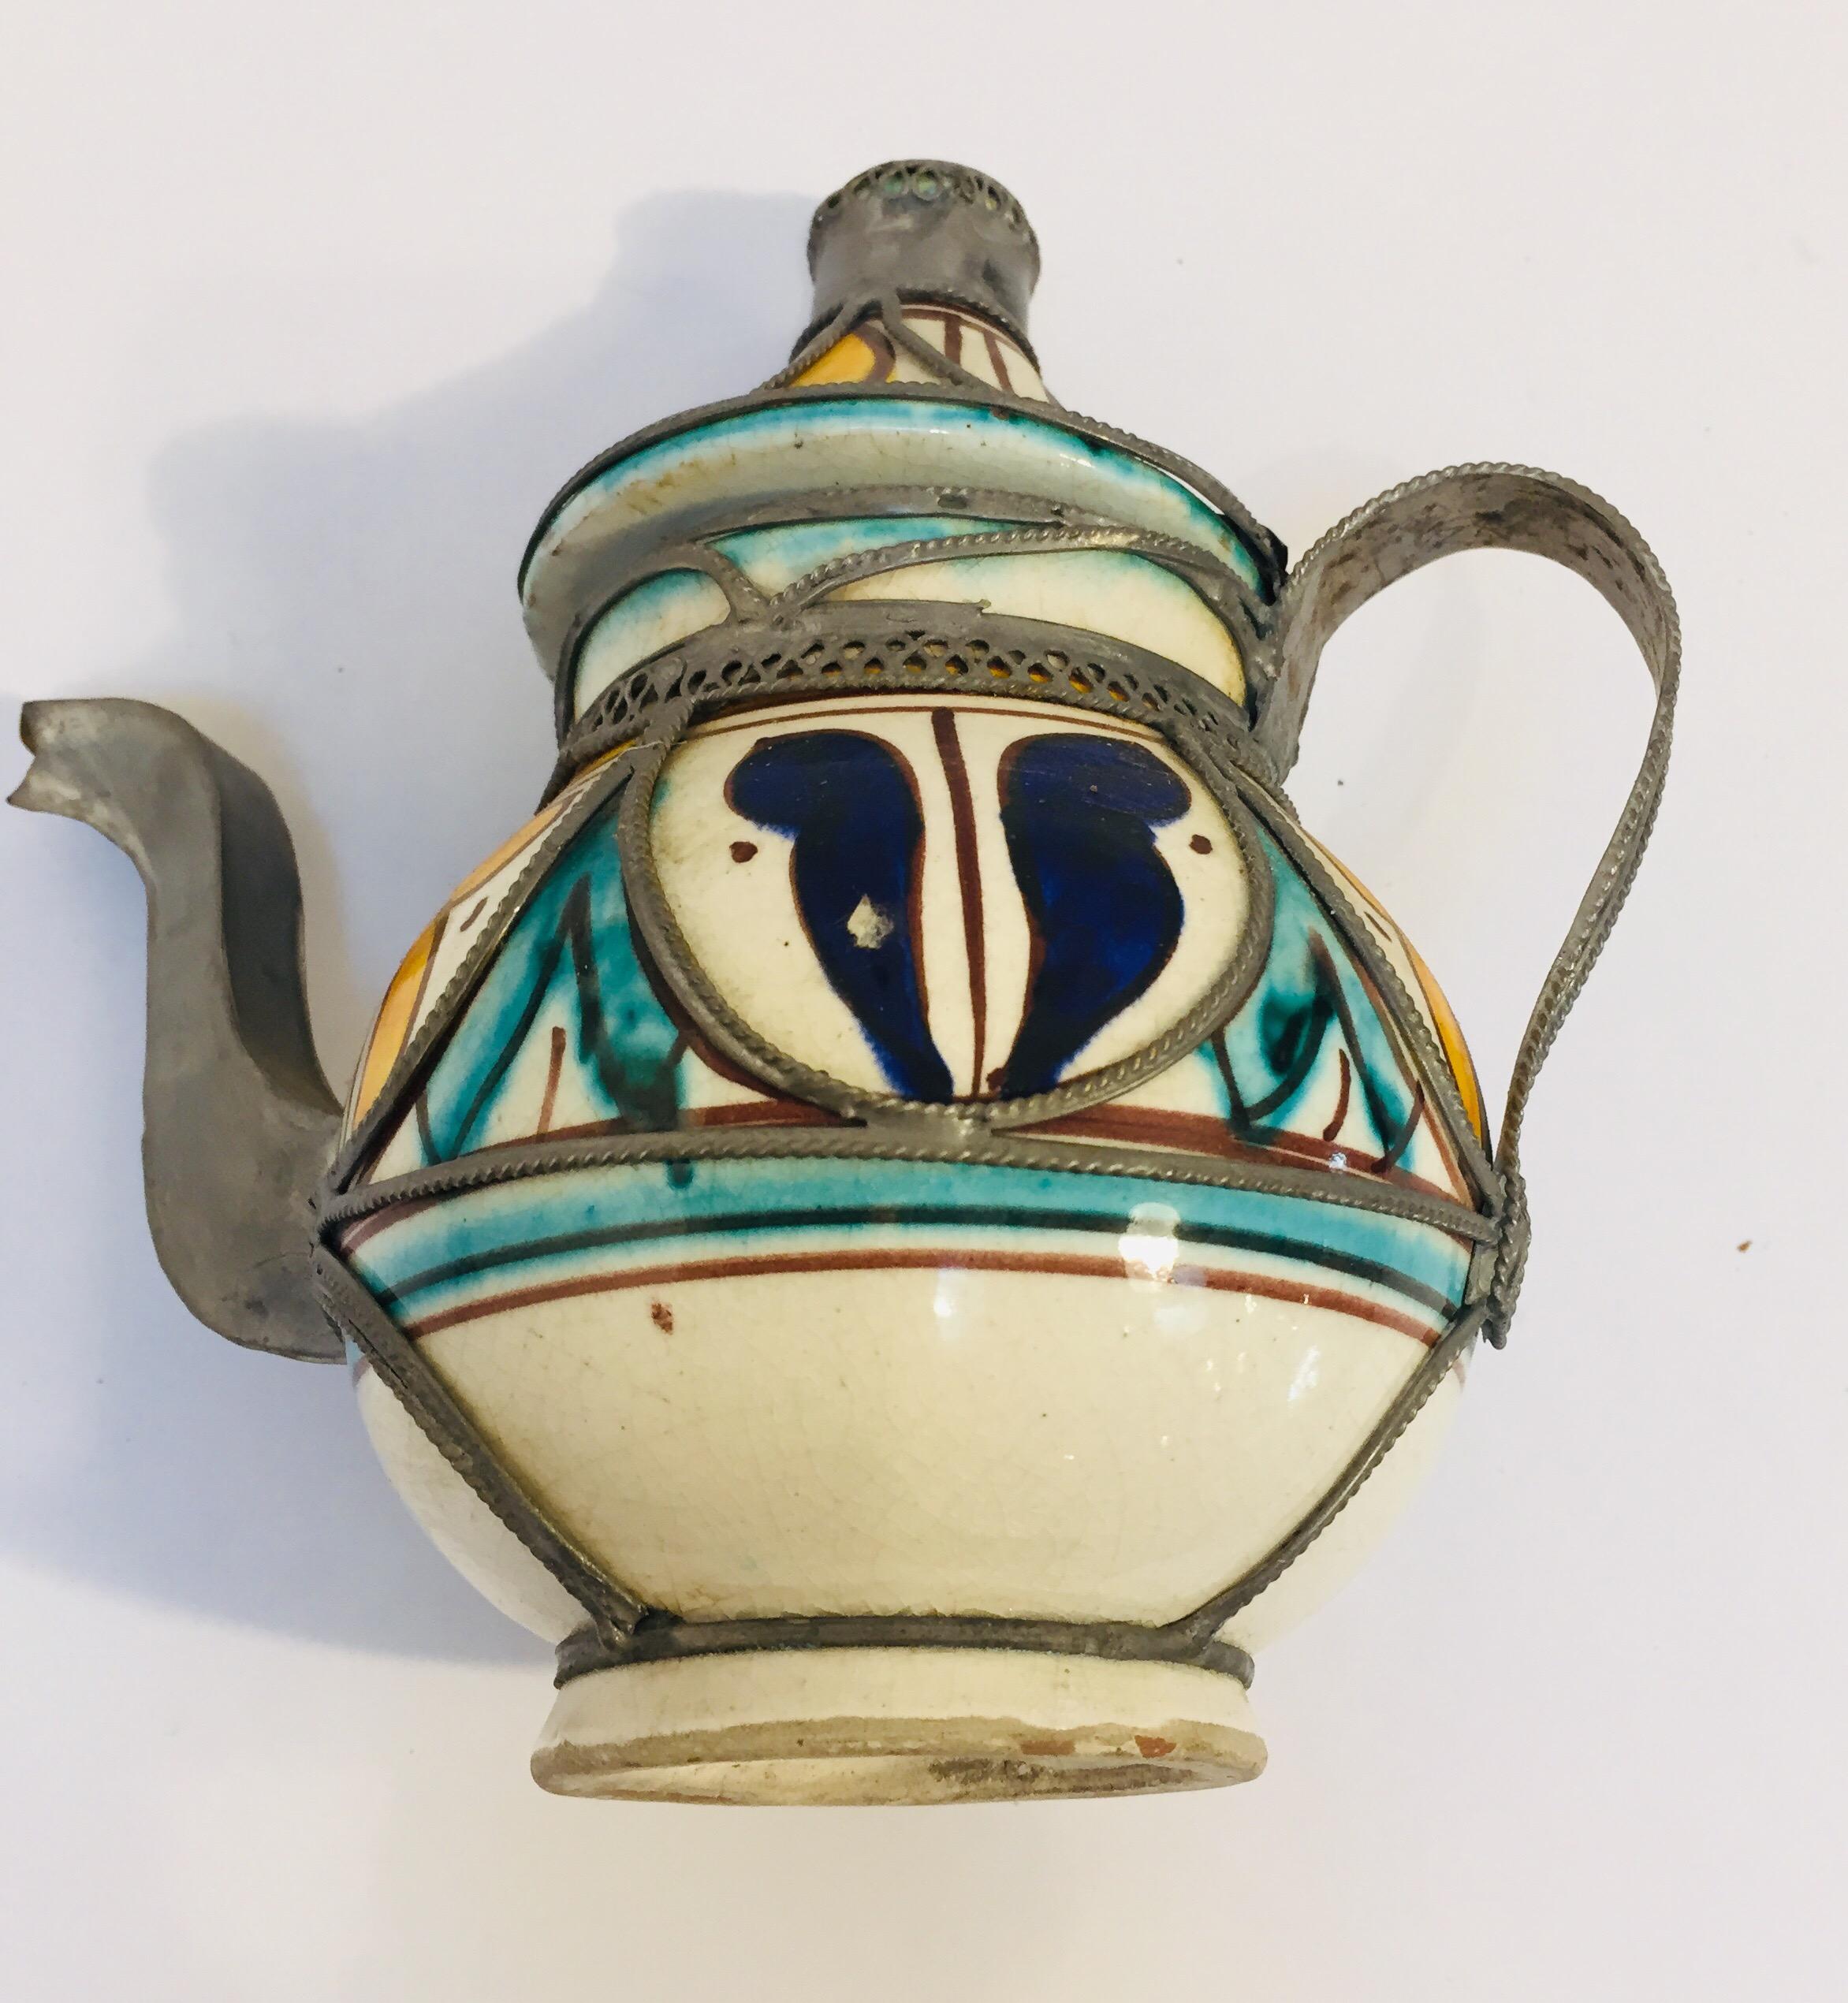 20th Century Moroccan Ceramic and Silver Filigree Decorative Tea Pot